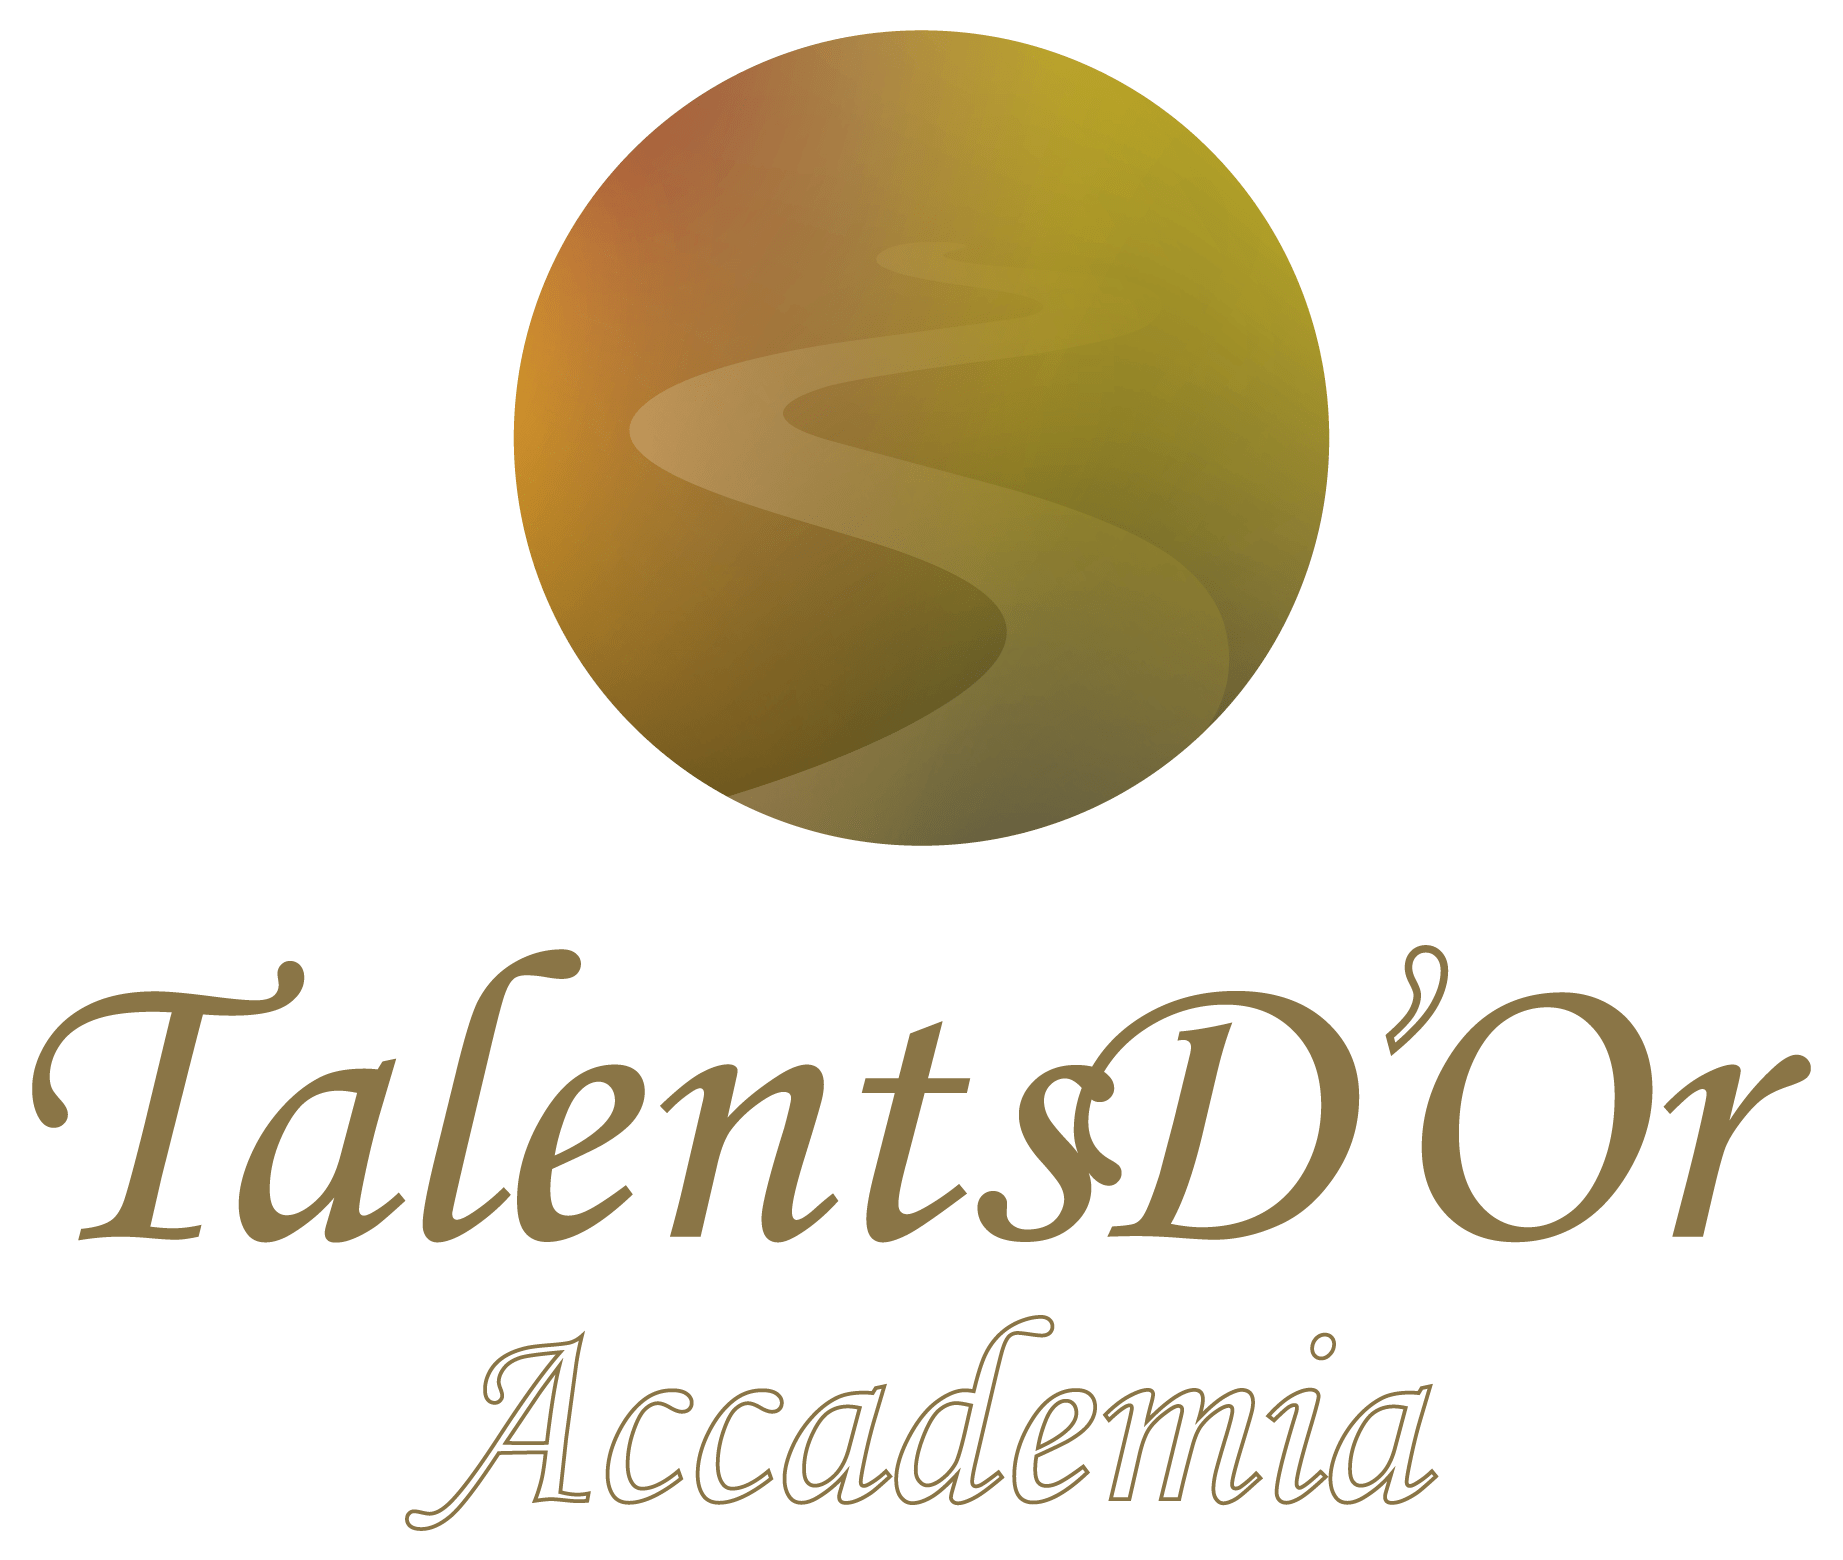 Création, Réalisation, Logo, Talents D'Or Accademia,